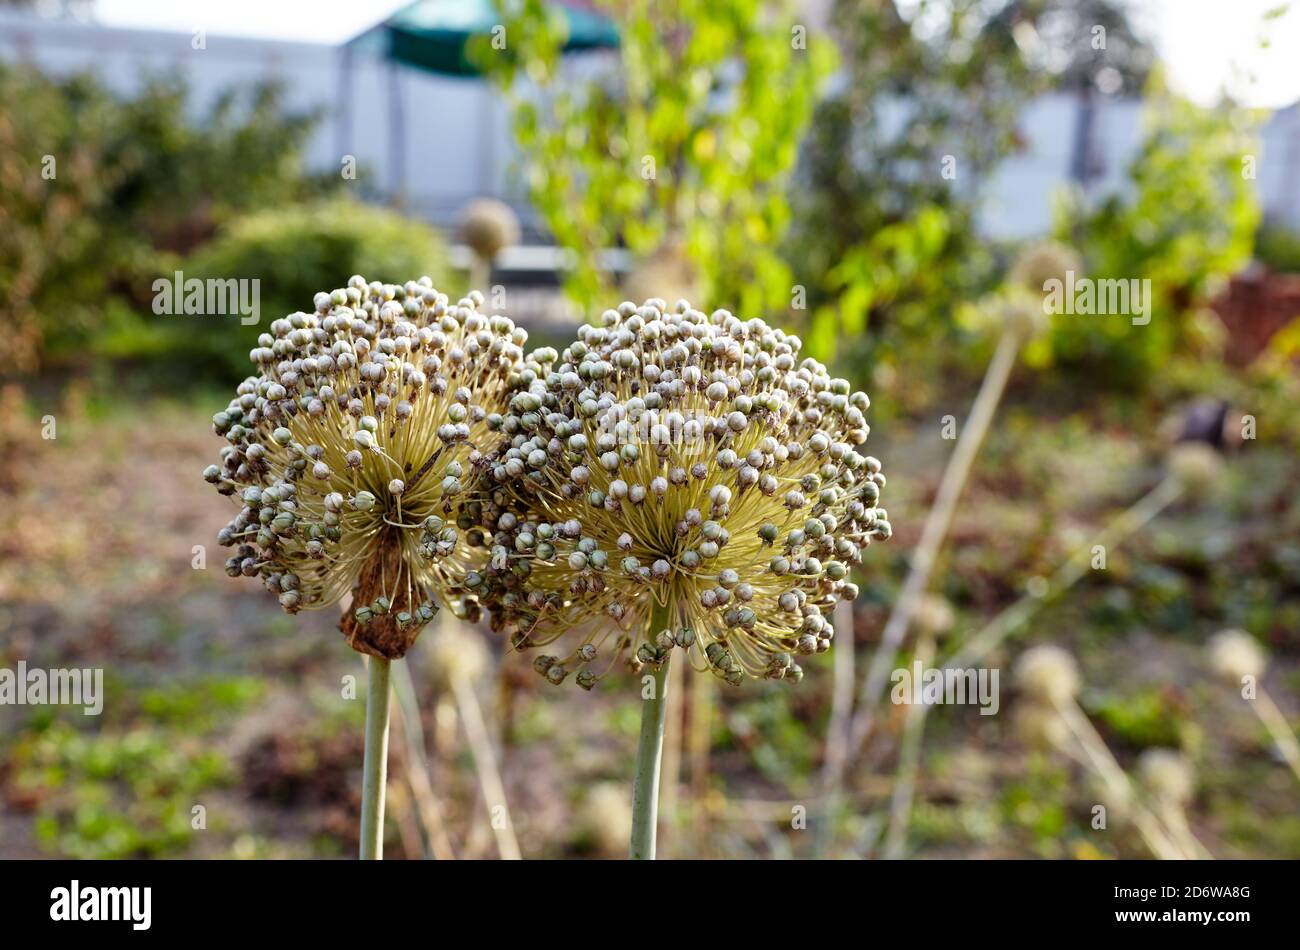 Blooming onion or garlic flower. Onion flower heads on vegetable garden. Garlic flower buds Stock Photo